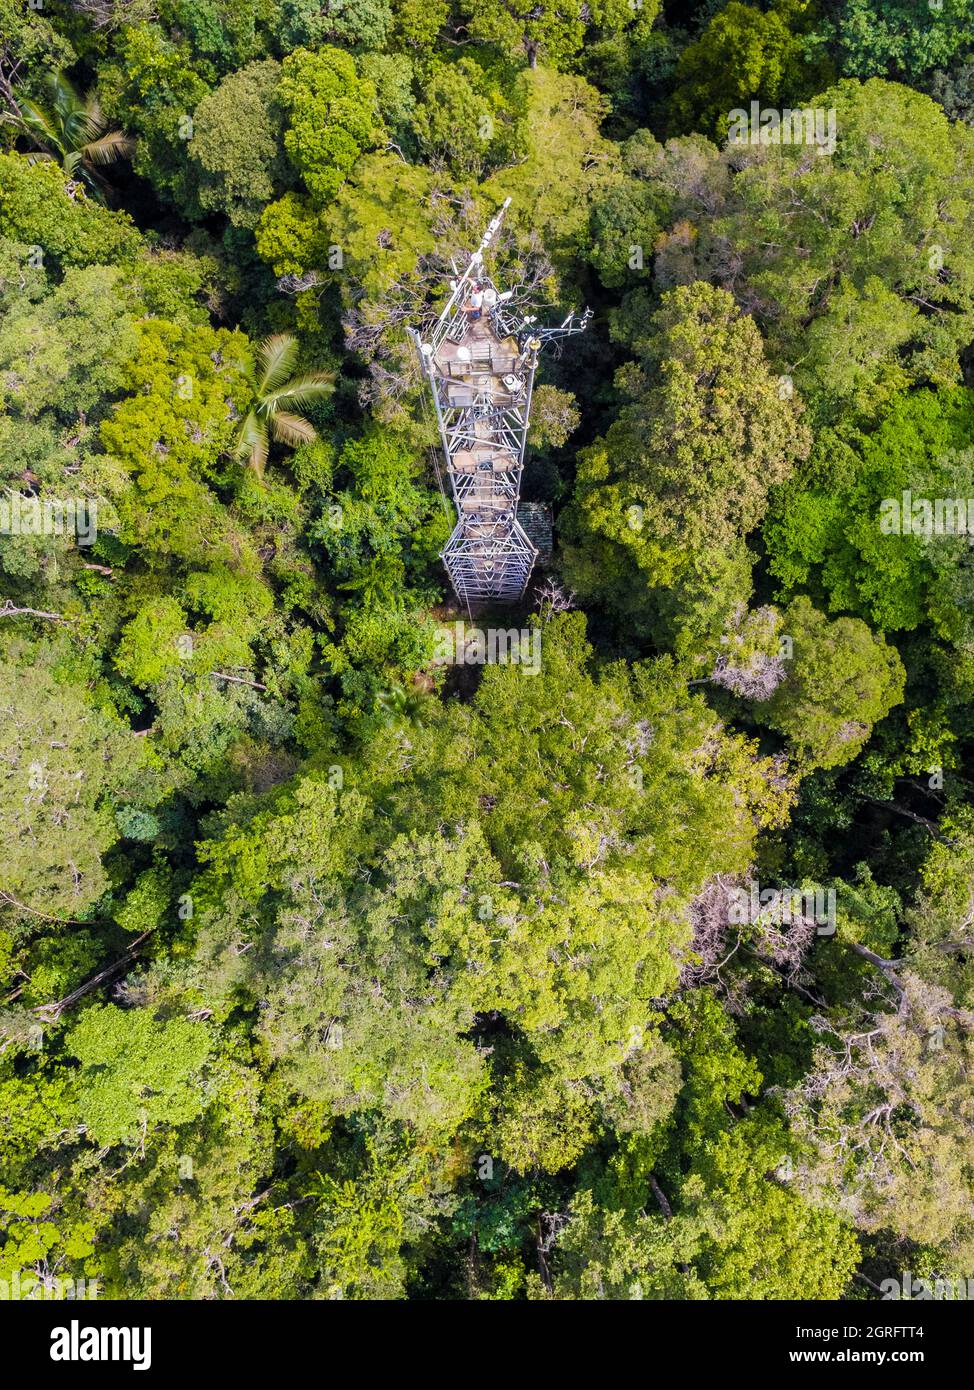 Station de recherche France, Guyane française, Kourou, Paracou (gérée par le Cirad) étudiant les échanges de gaz (cycle du carbone) entre les différentes couches de la forêt tropicale, vue aérienne de la tour Guyaflux (vue aérienne) Banque D'Images